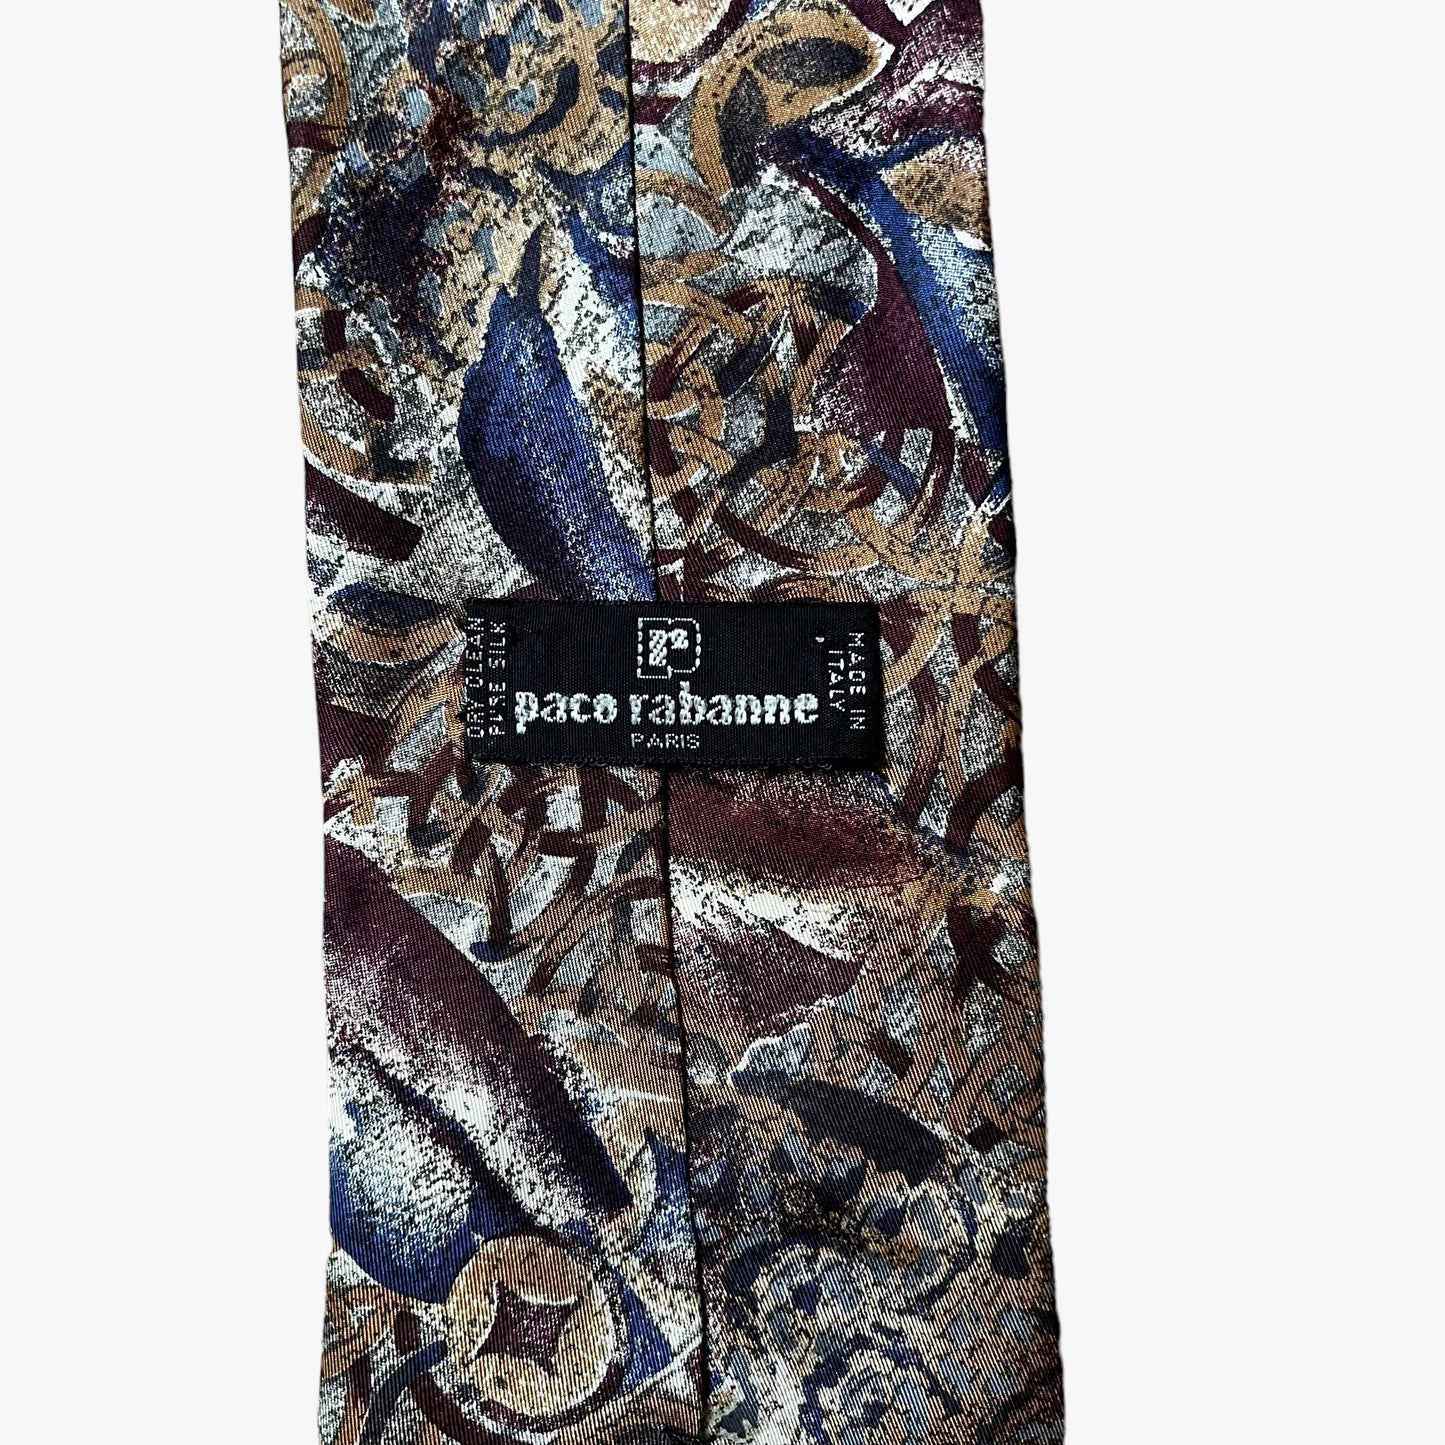 Vintage 90s Paco Rabanne Paris Abstract Silk Tie Label - Casspios Dream